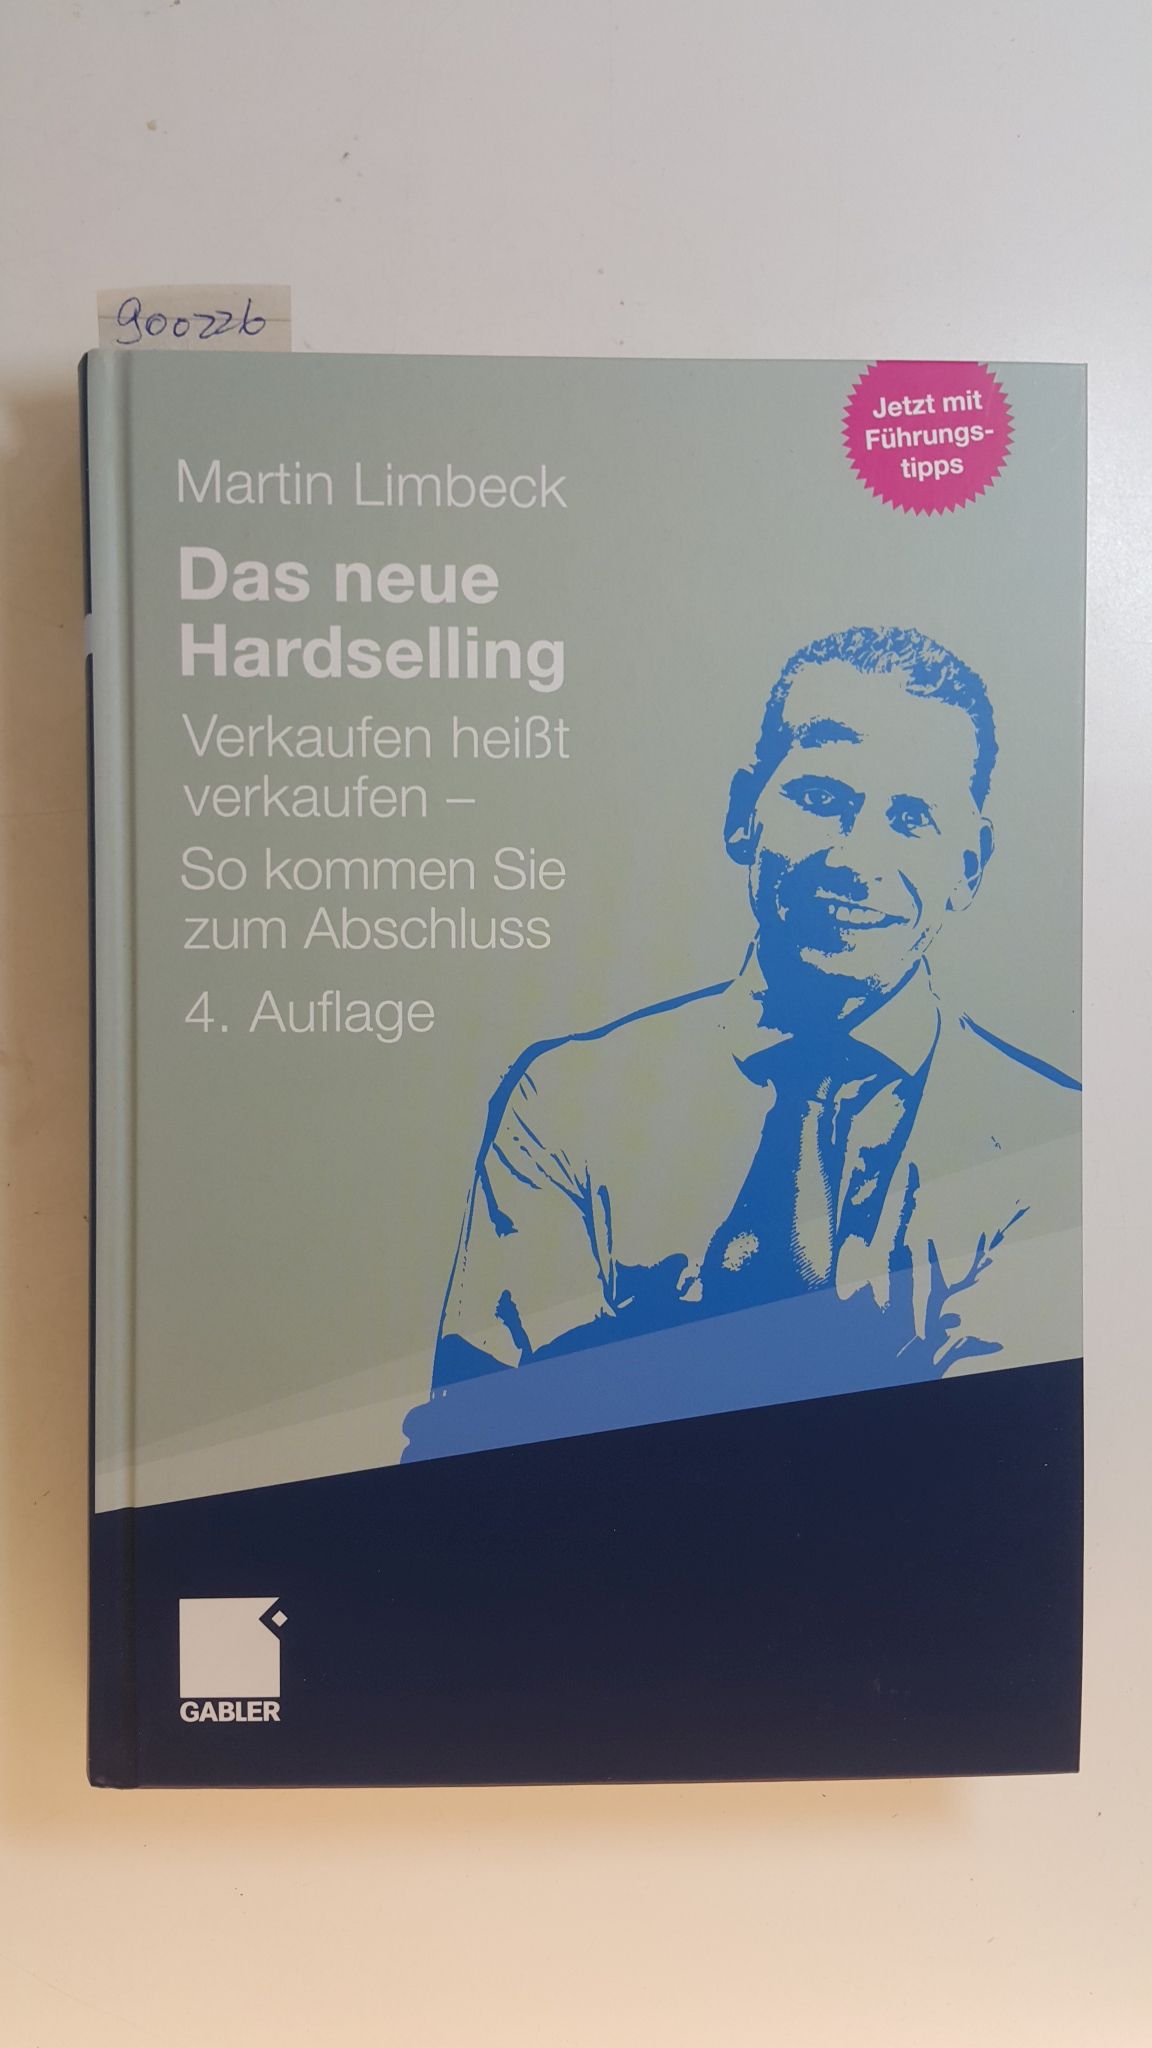 Das neue Hardselling : Verkaufen heißt verkaufen - so kommen Sie zum Abschluss ; (jetzt mit Führungstipps) - Limbeck, Martin (Verfasser)